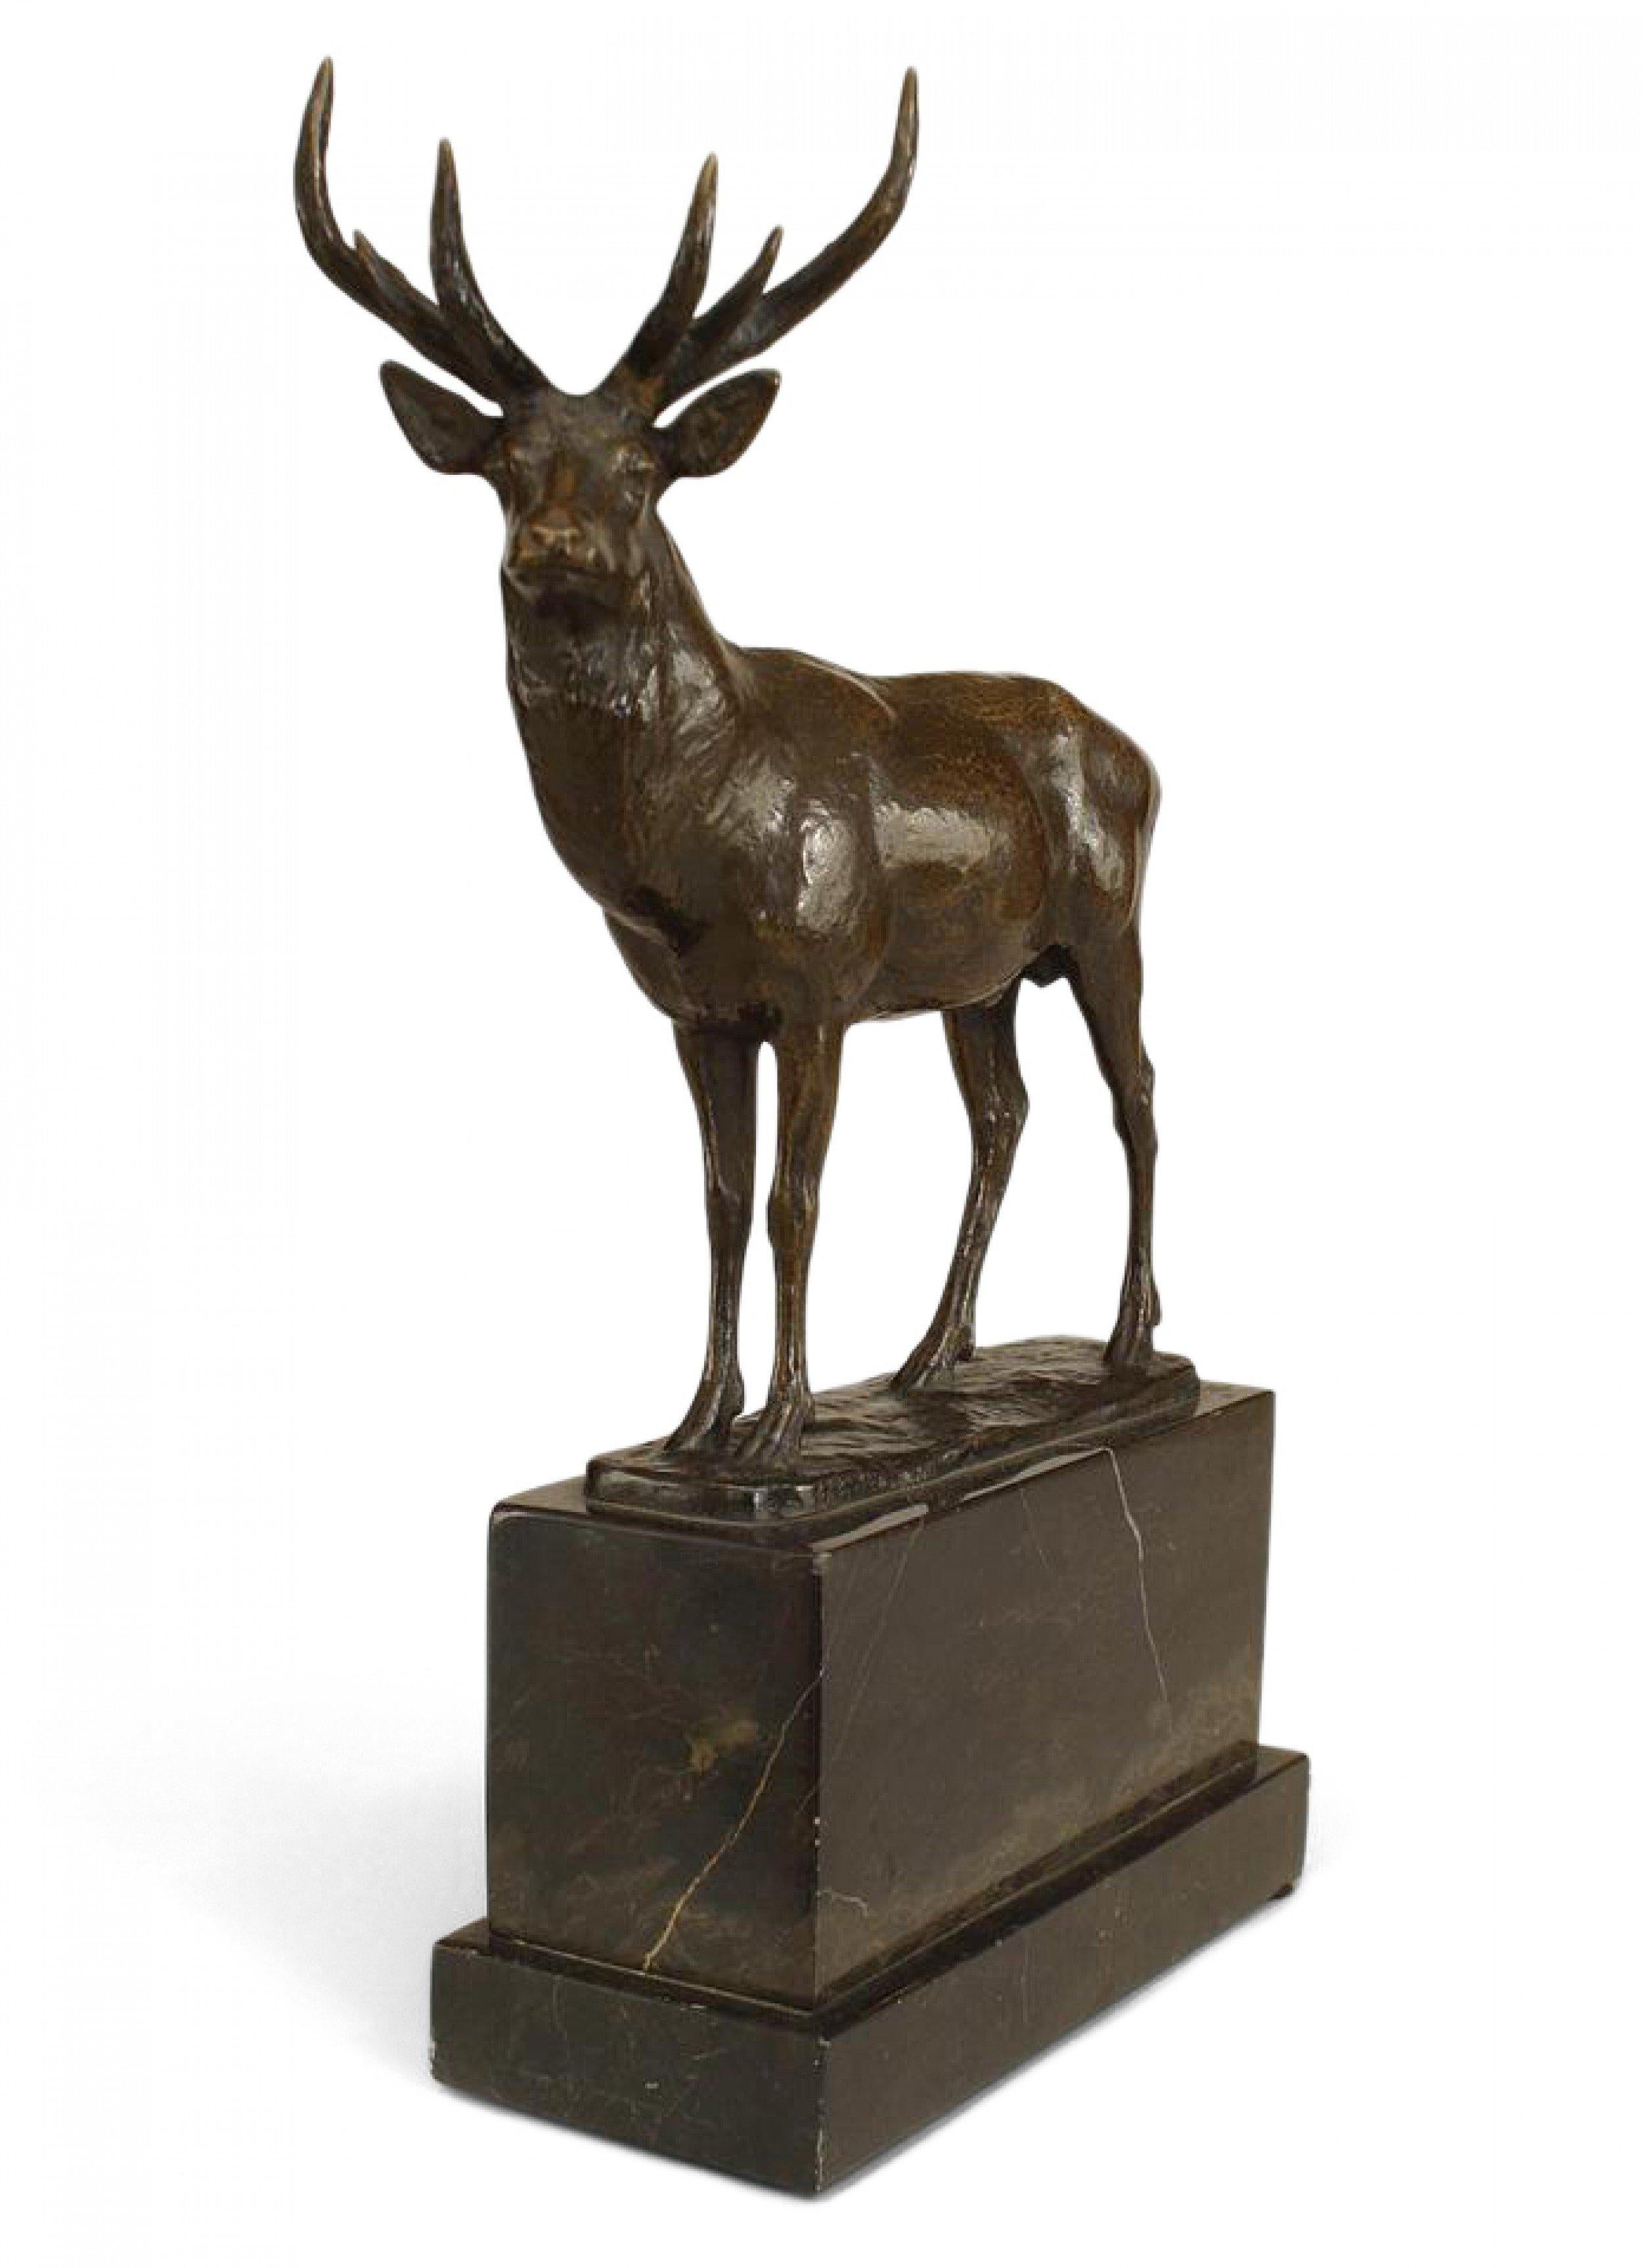 Figurine française victorienne en bronze représentant un cerf avec des bois sur une base en marbre noir de forme rectangulaire (signée R. KORN)
 